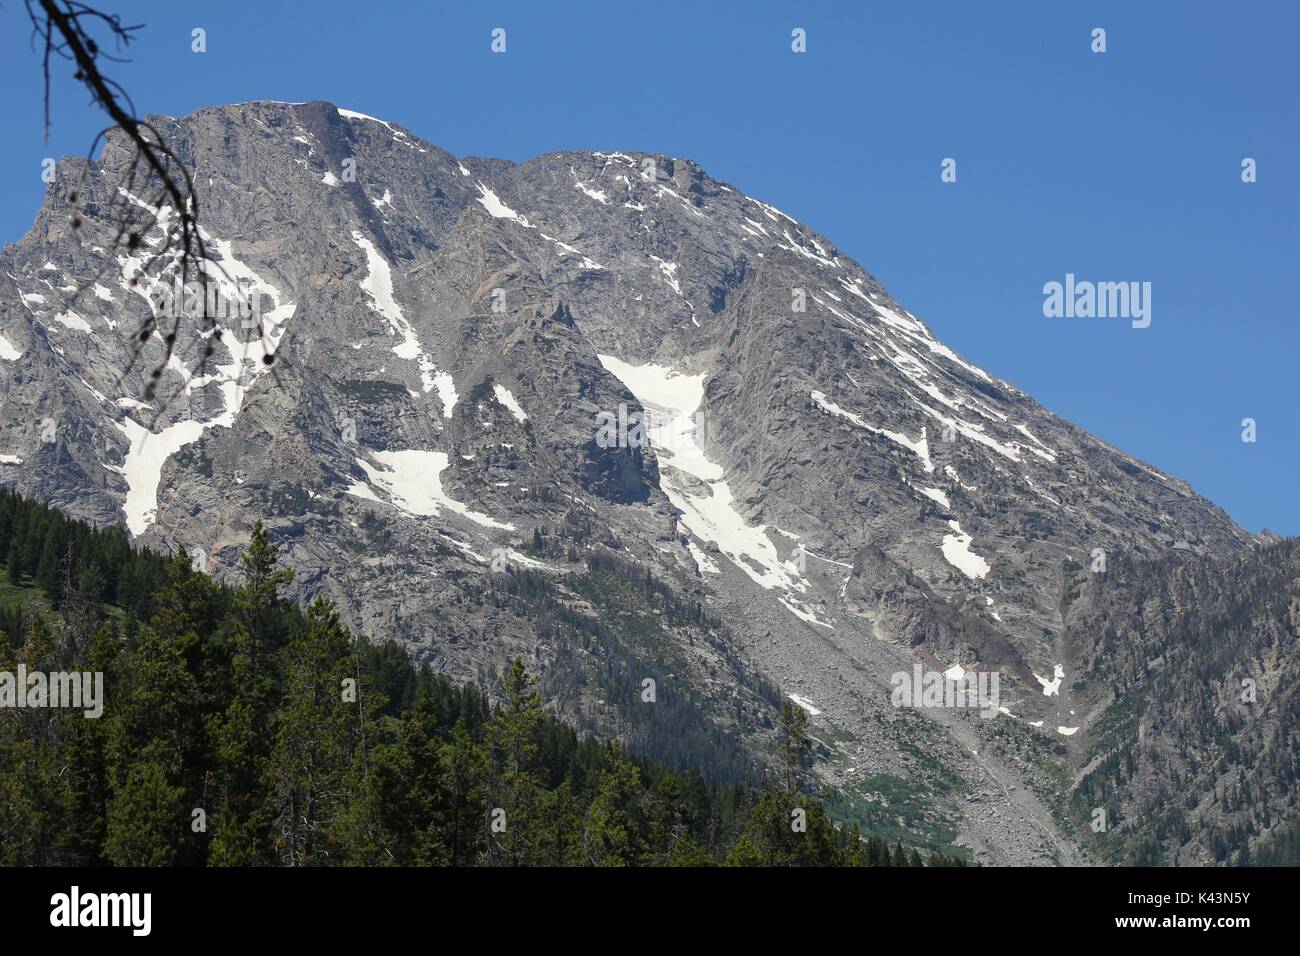 Schnee beginnt aus zu einem Rocky Mountain Peak im Grand Teton National Park Juni 23, 2016 in der Nähe von Elche, Wyoming schmelzen. (Foto von John tobiason über Planetpix) Stockfoto